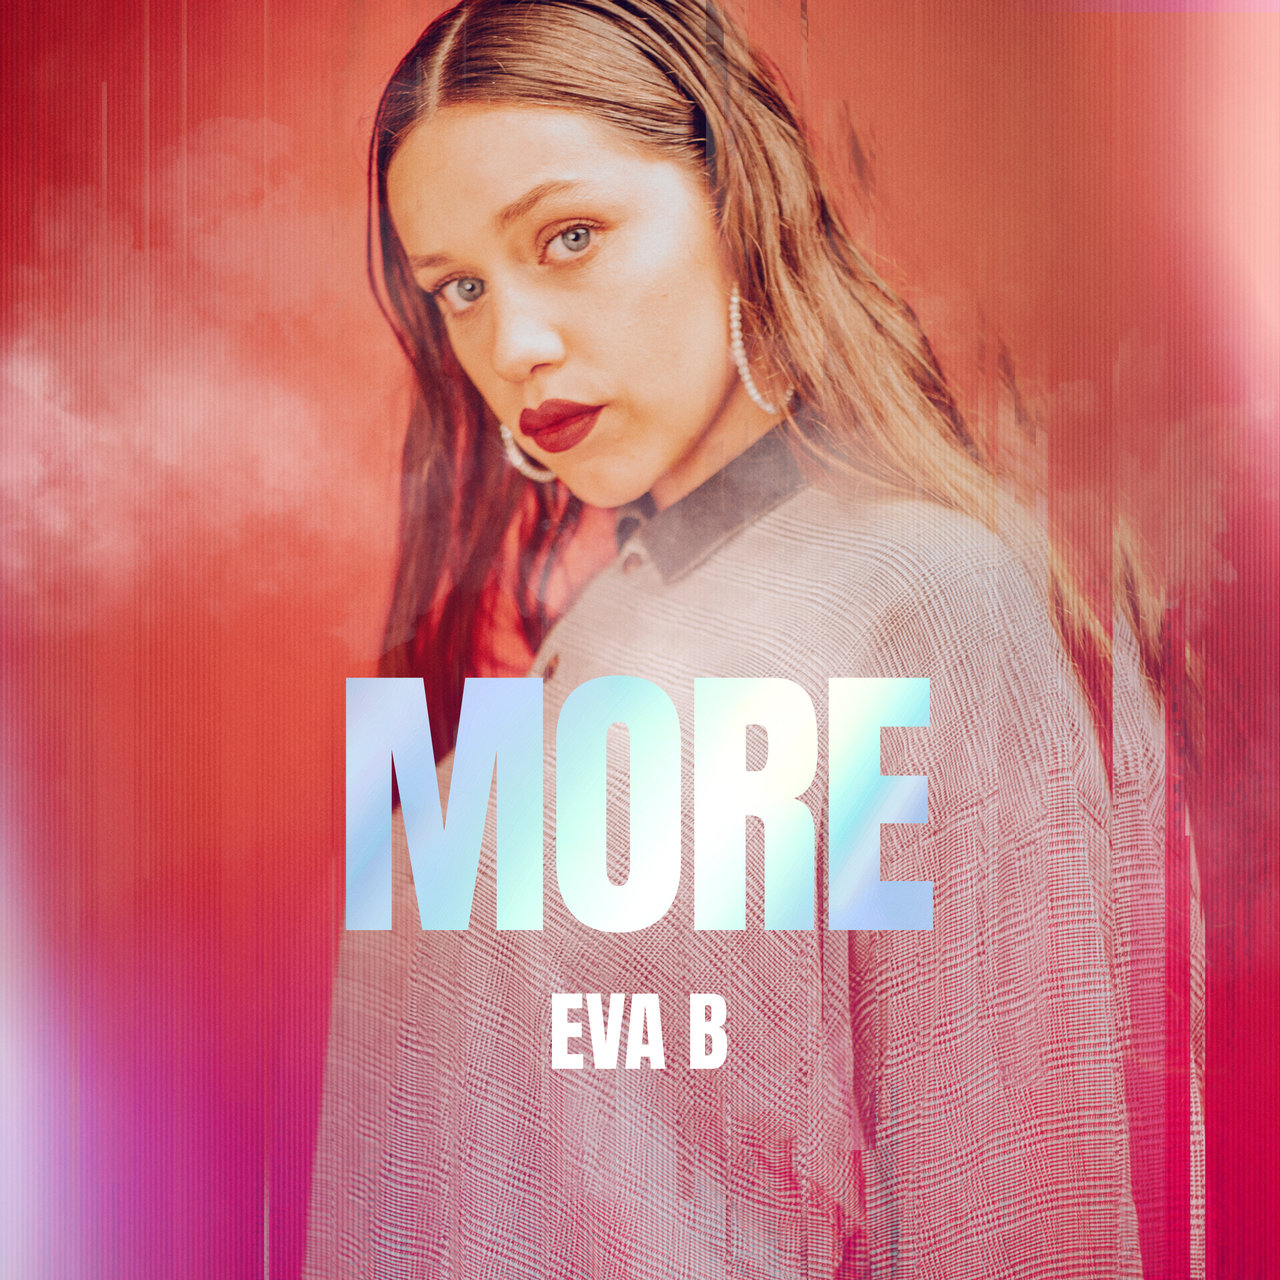 Eva B MORE cover artwork